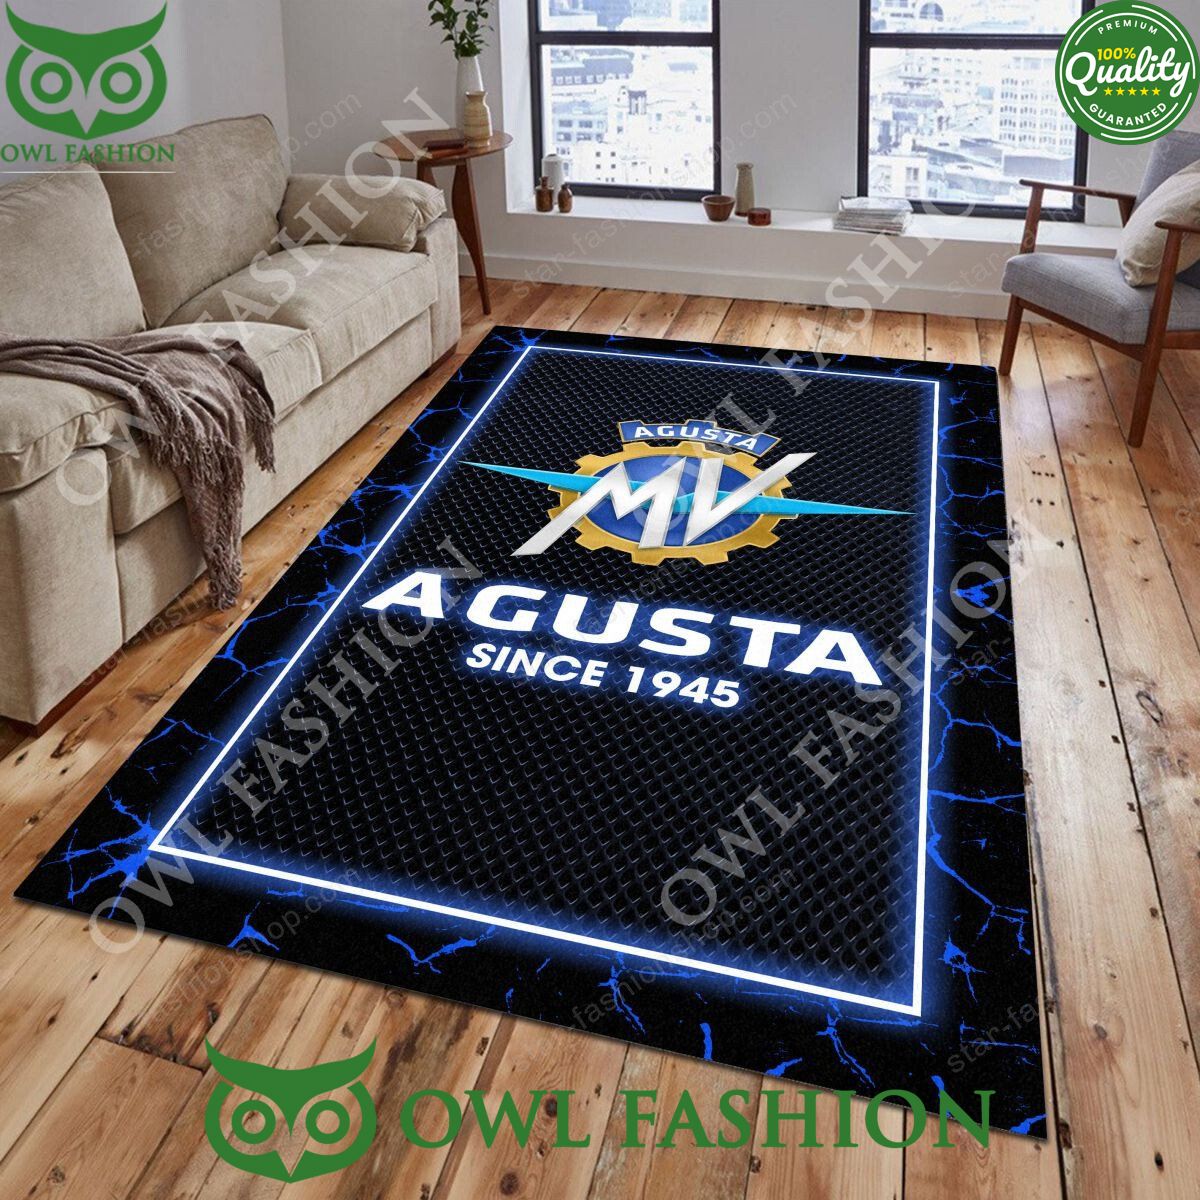 new design mv agusta lighting pattern carpet rug 1 4J4sc.jpg